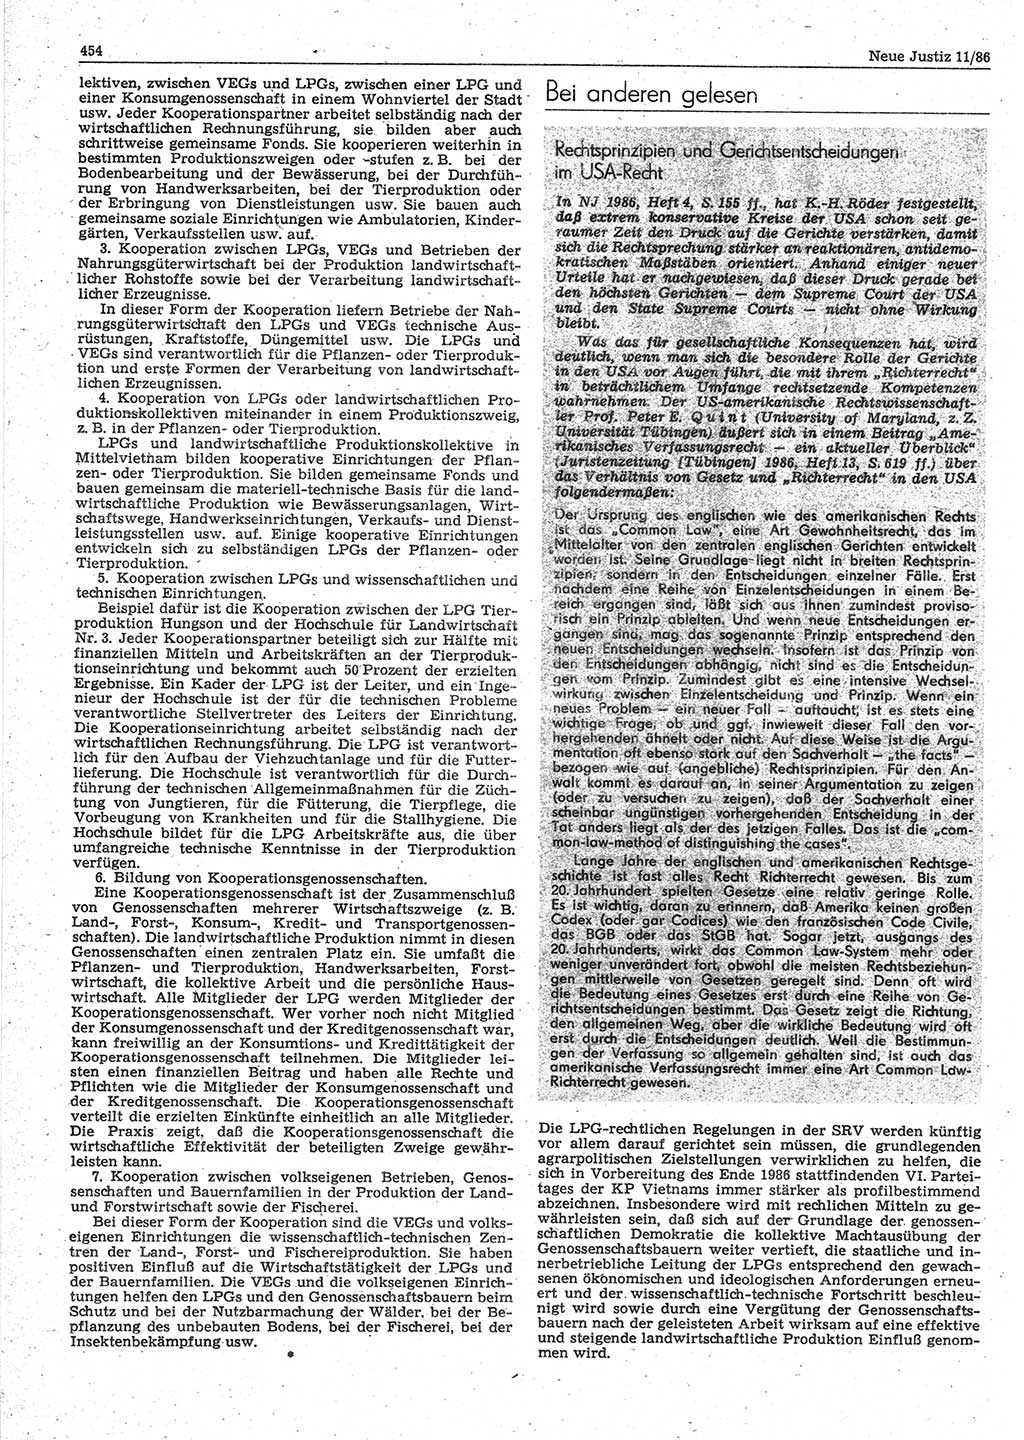 Neue Justiz (NJ), Zeitschrift für sozialistisches Recht und Gesetzlichkeit [Deutsche Demokratische Republik (DDR)], 40. Jahrgang 1986, Seite 454 (NJ DDR 1986, S. 454)